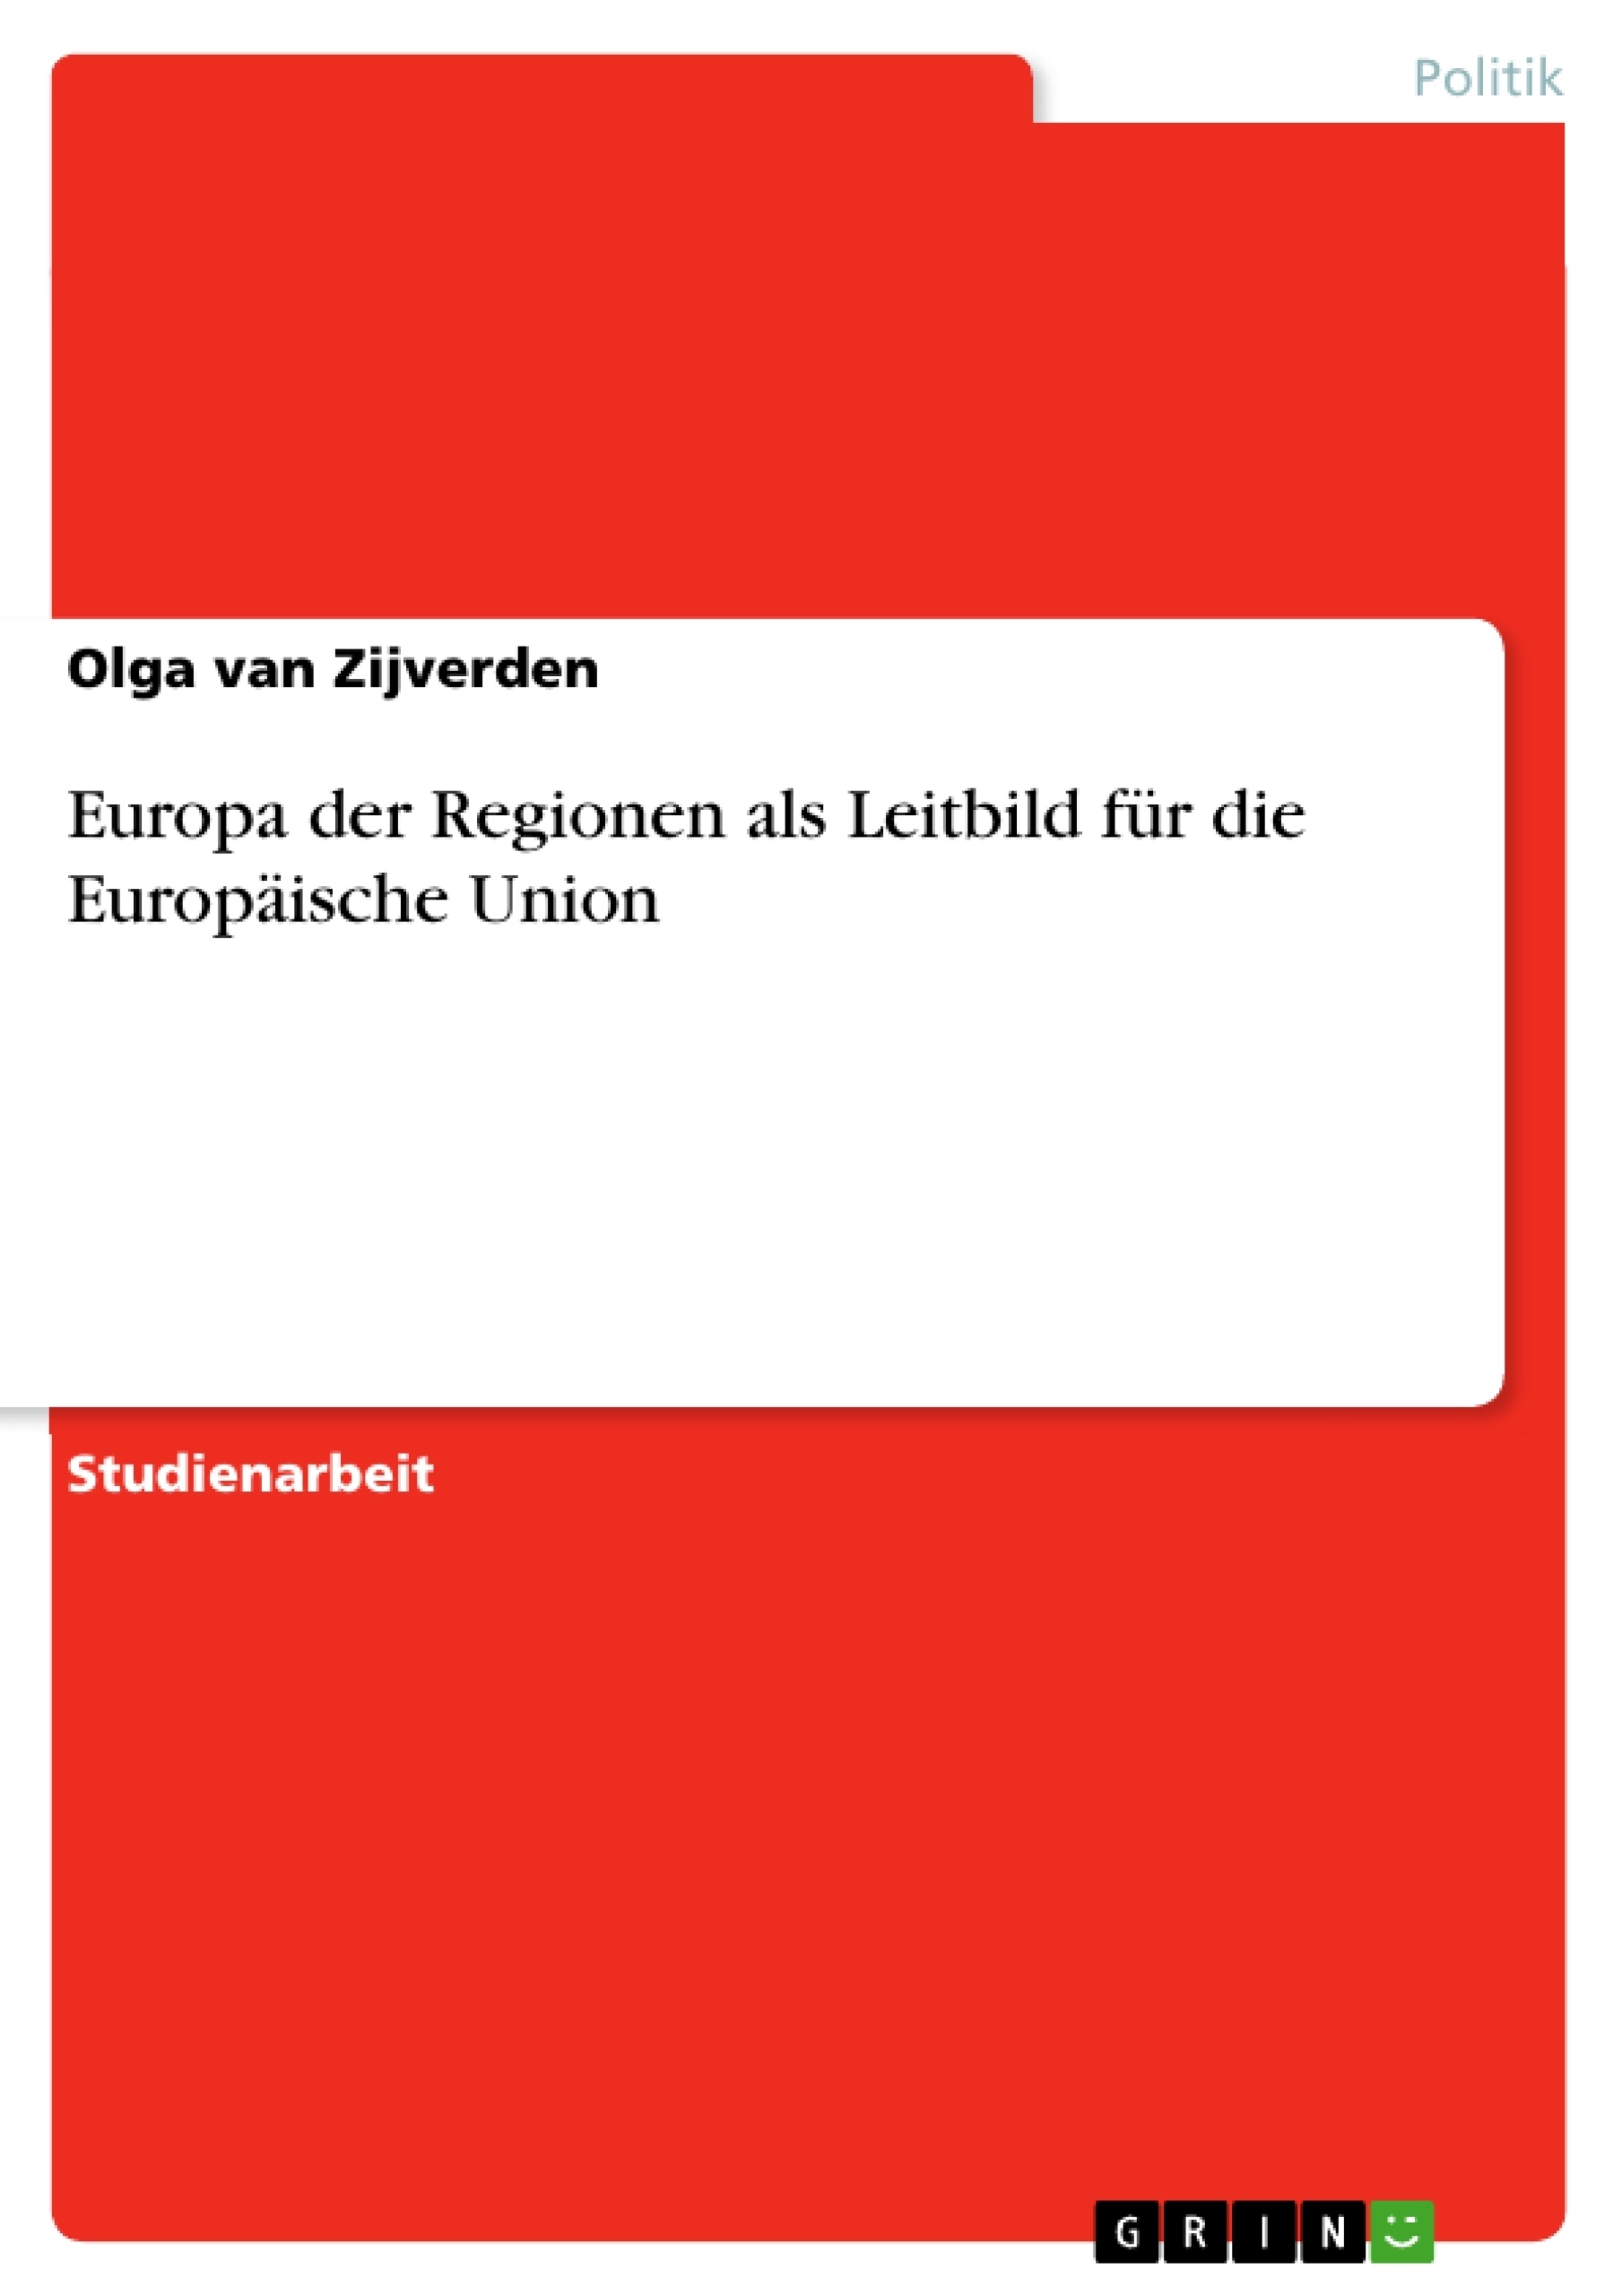 Titre: Europa der Regionen als Leitbild für die Europäische Union